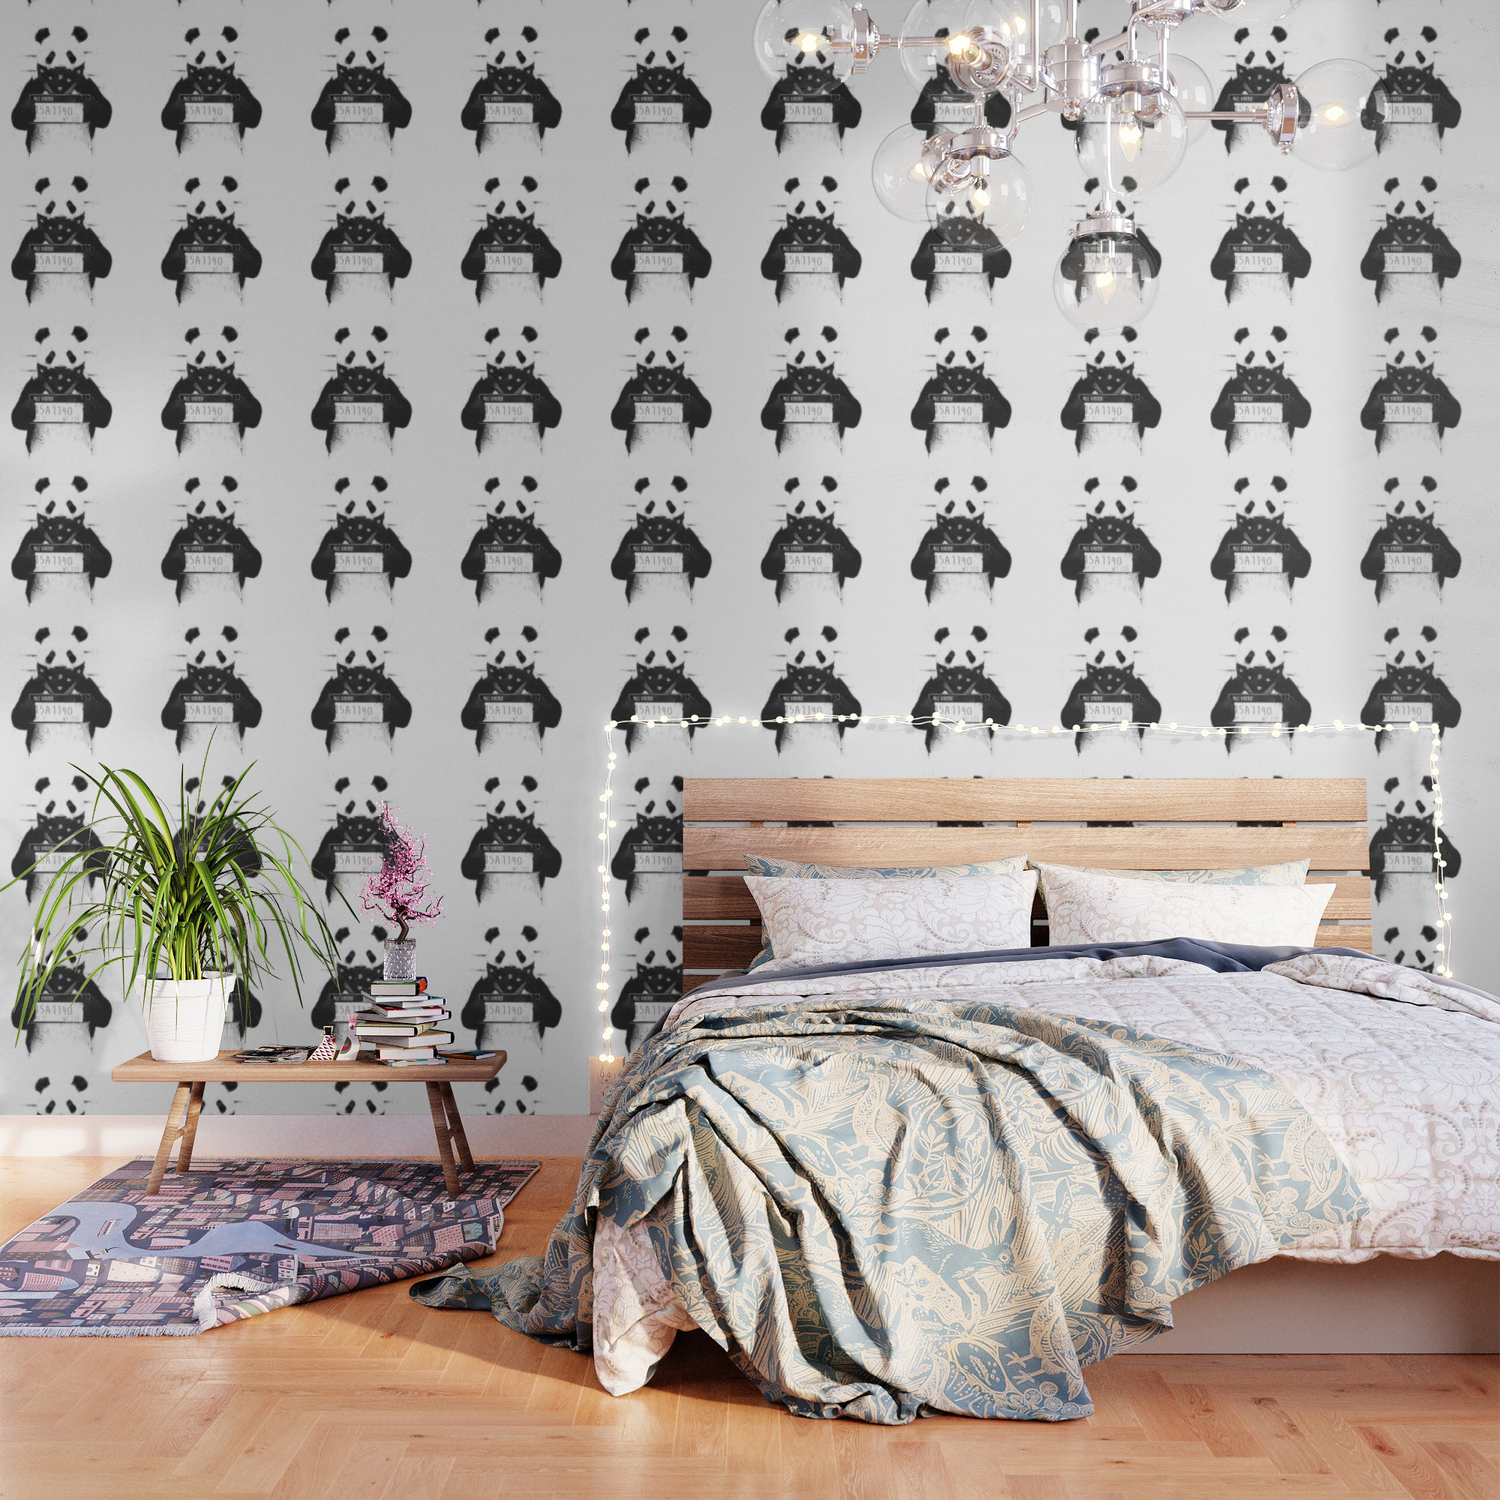 Aesthetic Panda Wallpapers